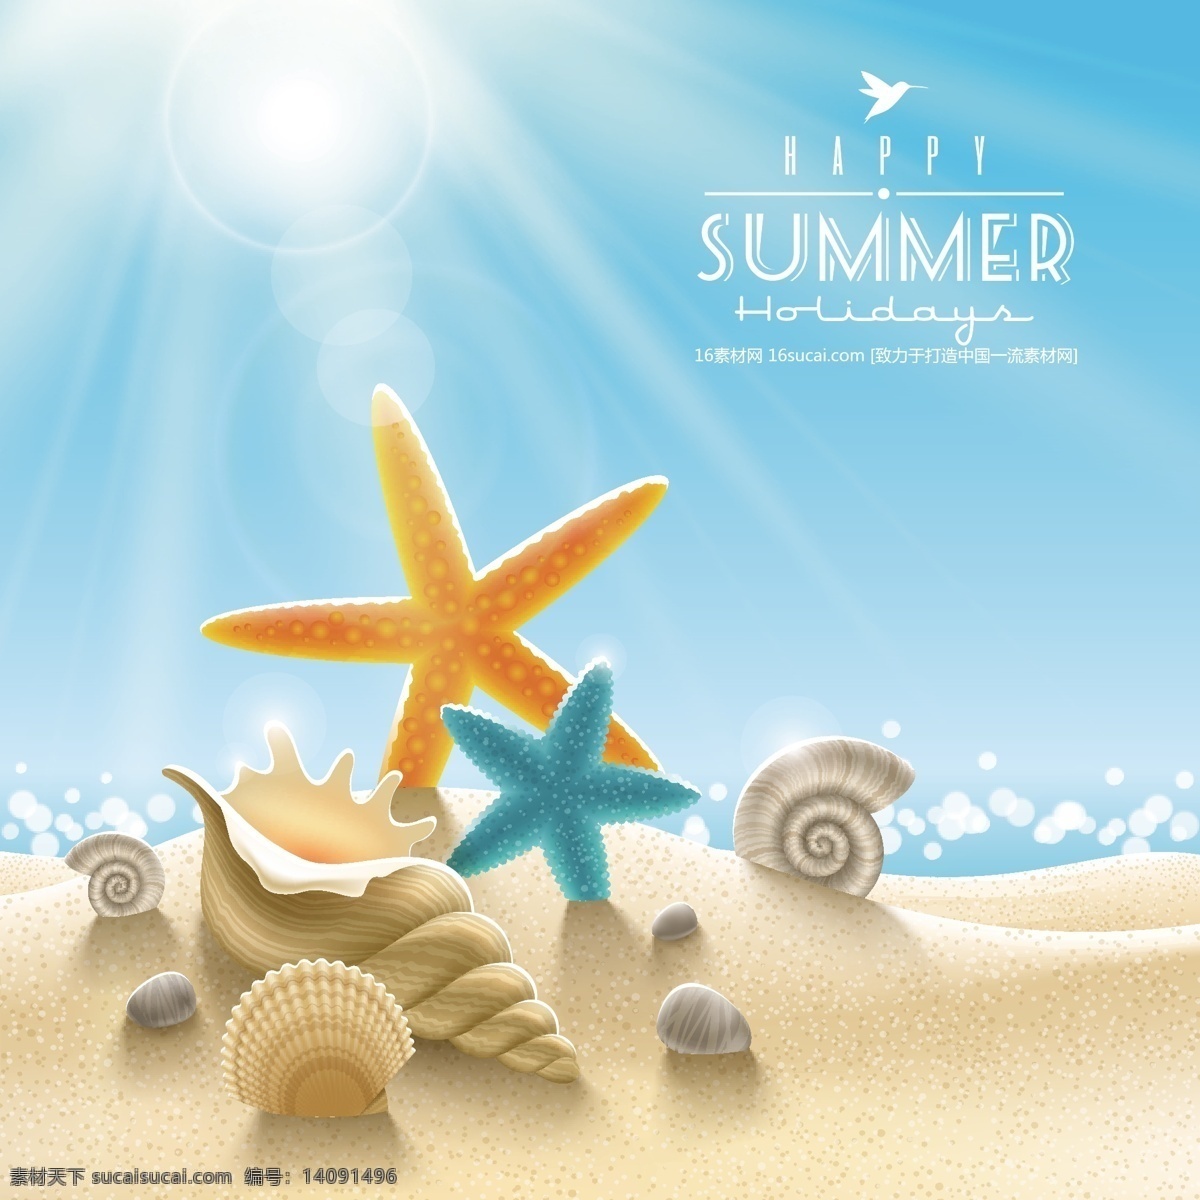 卡通夏季海滩 卡通 夏季 海滩 沙滩 海星 海螺 日光 海浪